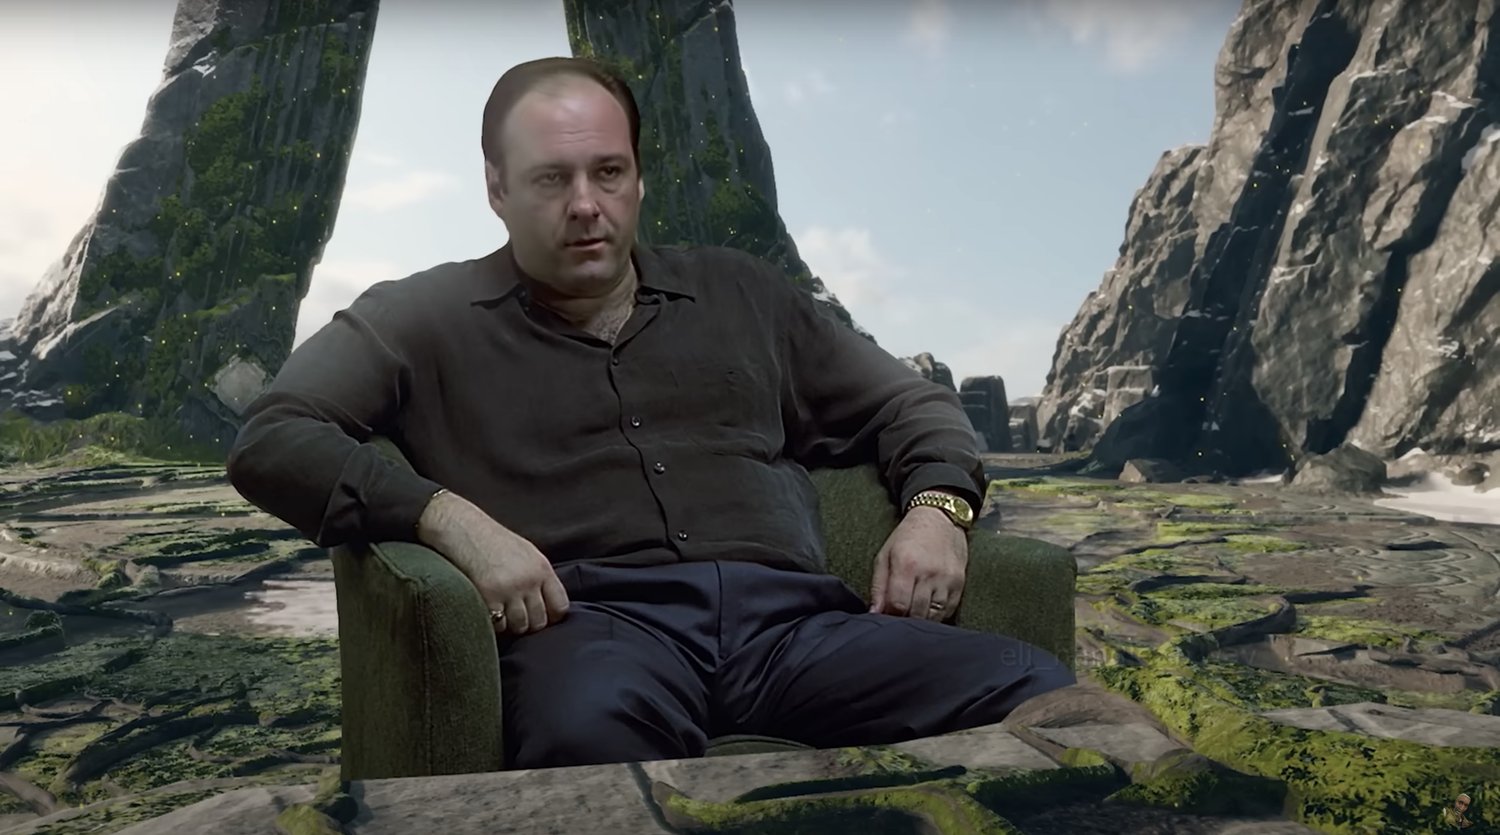 Tony Soprano inséré dans GOD OF WAR dans une vidéo amusante faite par des fans